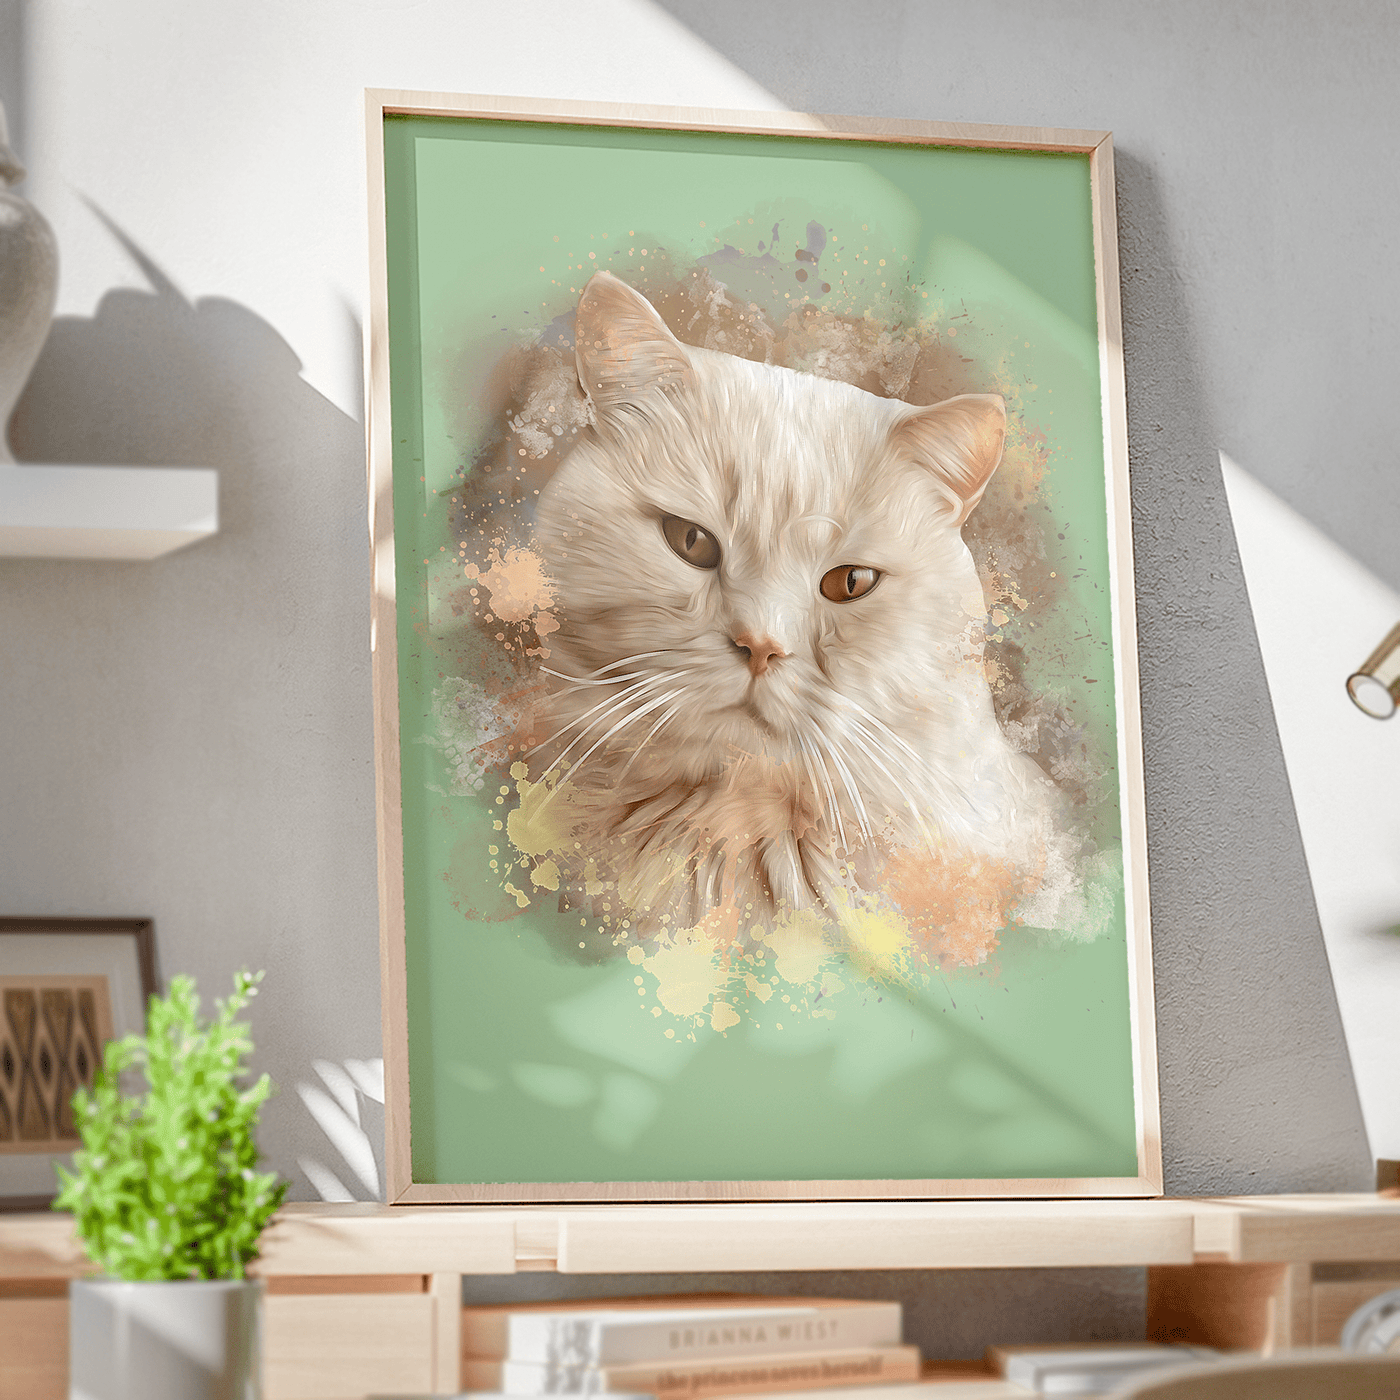 watercolor cat portrait of an adorable fur cat